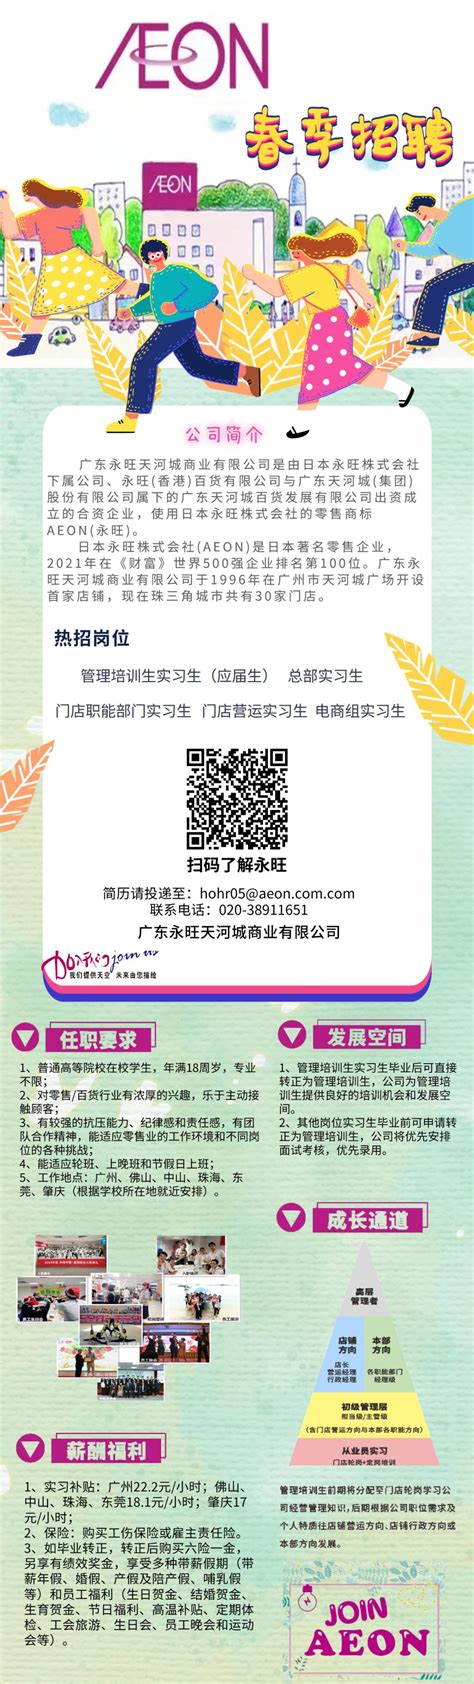 广东永旺天河城商业有限公司招聘-学生就业指导处